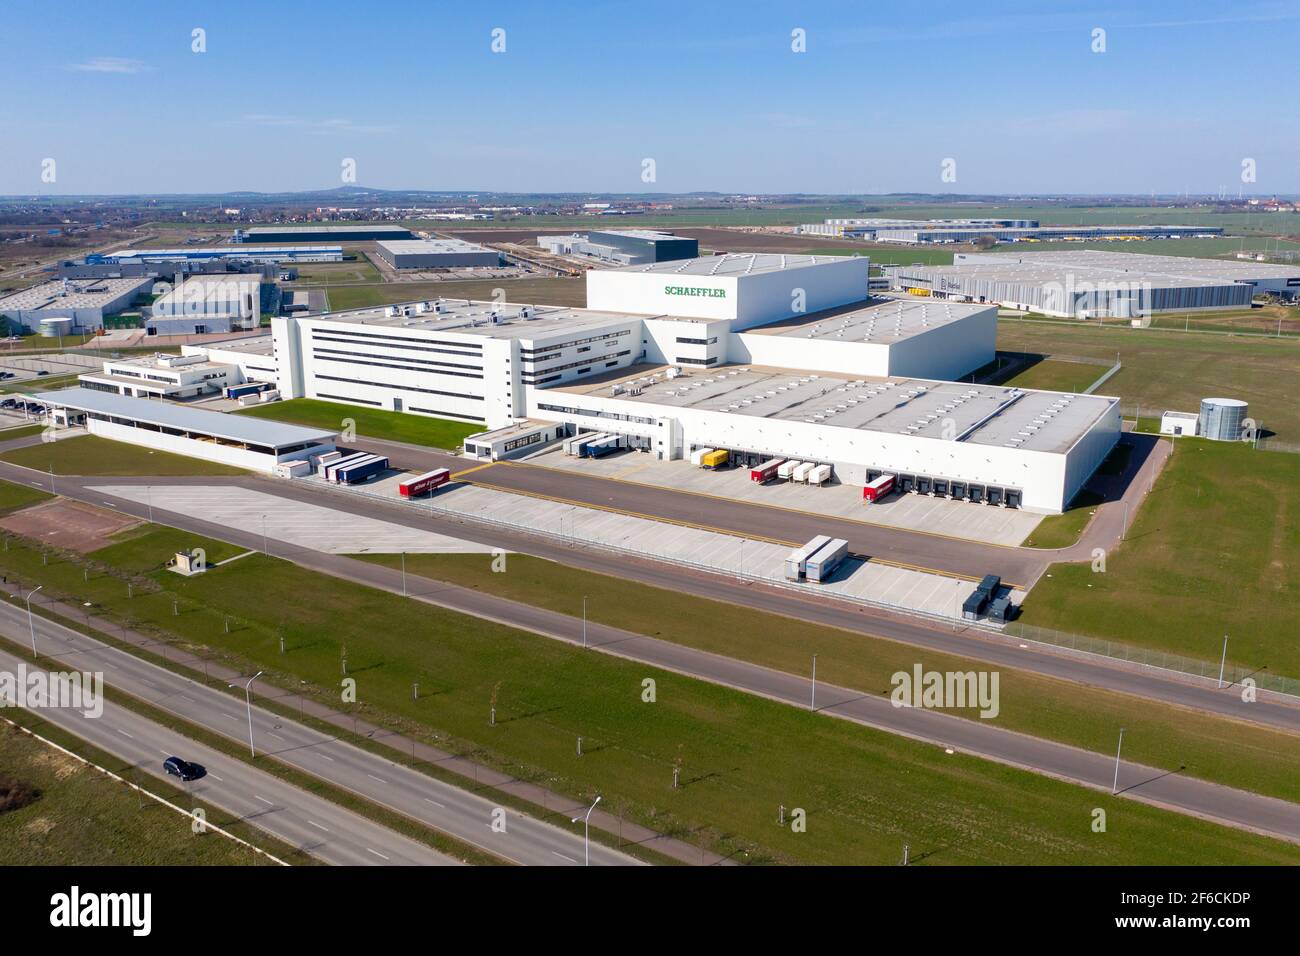 29 mars 2021, Saxe-Anhalt, Halle: Les salles de production de Schaeffler sont adjointes par les salles des autres entreprises de Star Park sur l'autoroute A14. Le parc industriel de 230 hectares a été créé à l'origine en 2000 pour que BMW le localise ici. Après l'attribution du contrat à Leipzig pour l'usine, la zone a été en jachère pendant des années. Au cours des dernières années, plusieurs compagnies logistiques et fournisseurs d'automobiles se sont installés ici en raison de l'emplacement favorable près de l'aéroport de Leipzig/Halle et de la connexion à deux autoroutes. Selon la ville de Halle, ces entreprises ont investi plus des trois quarts de Banque D'Images